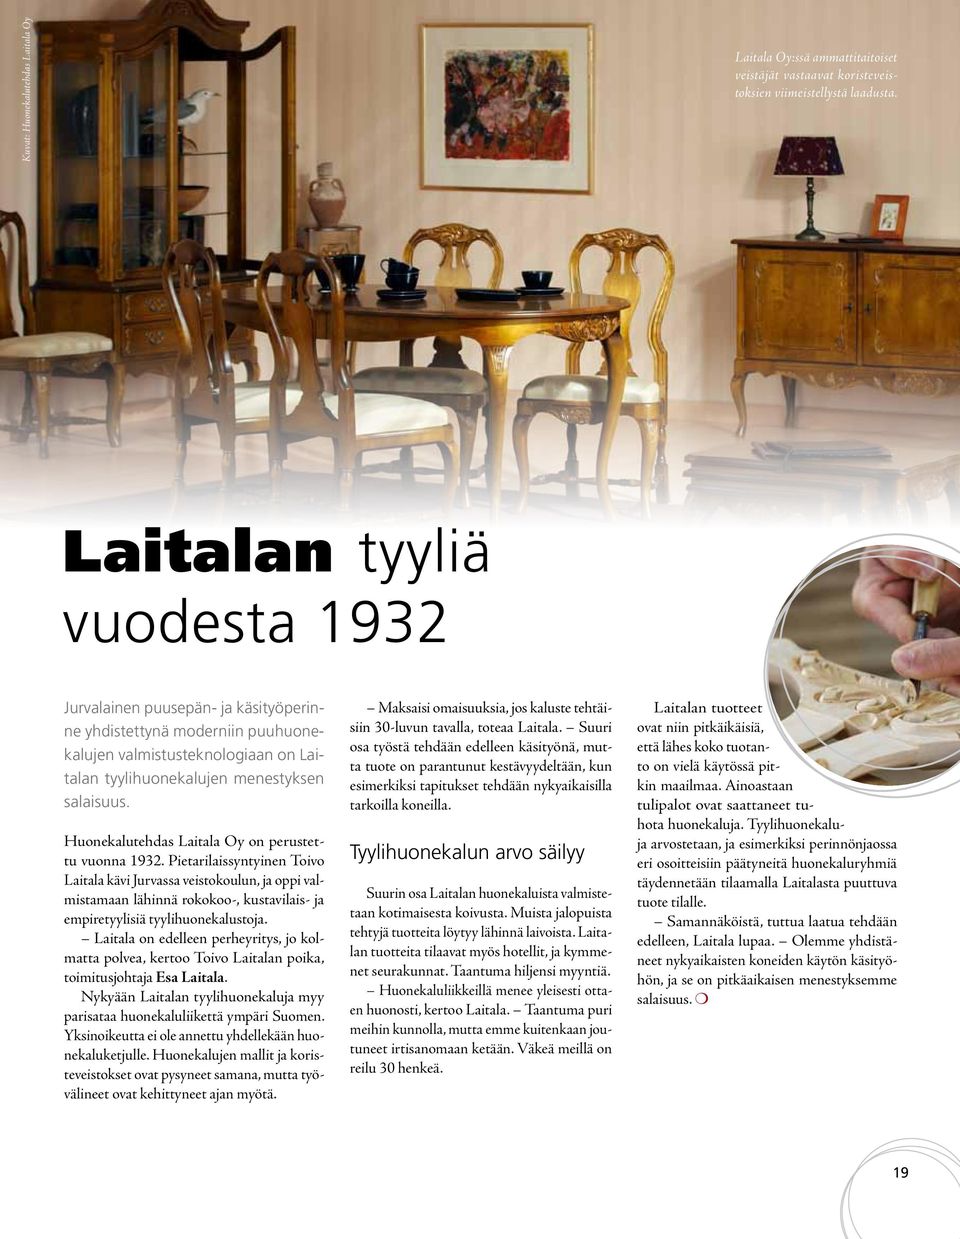 Huonekalutehdas Laitala Oy on perustettu vuonna 1932.